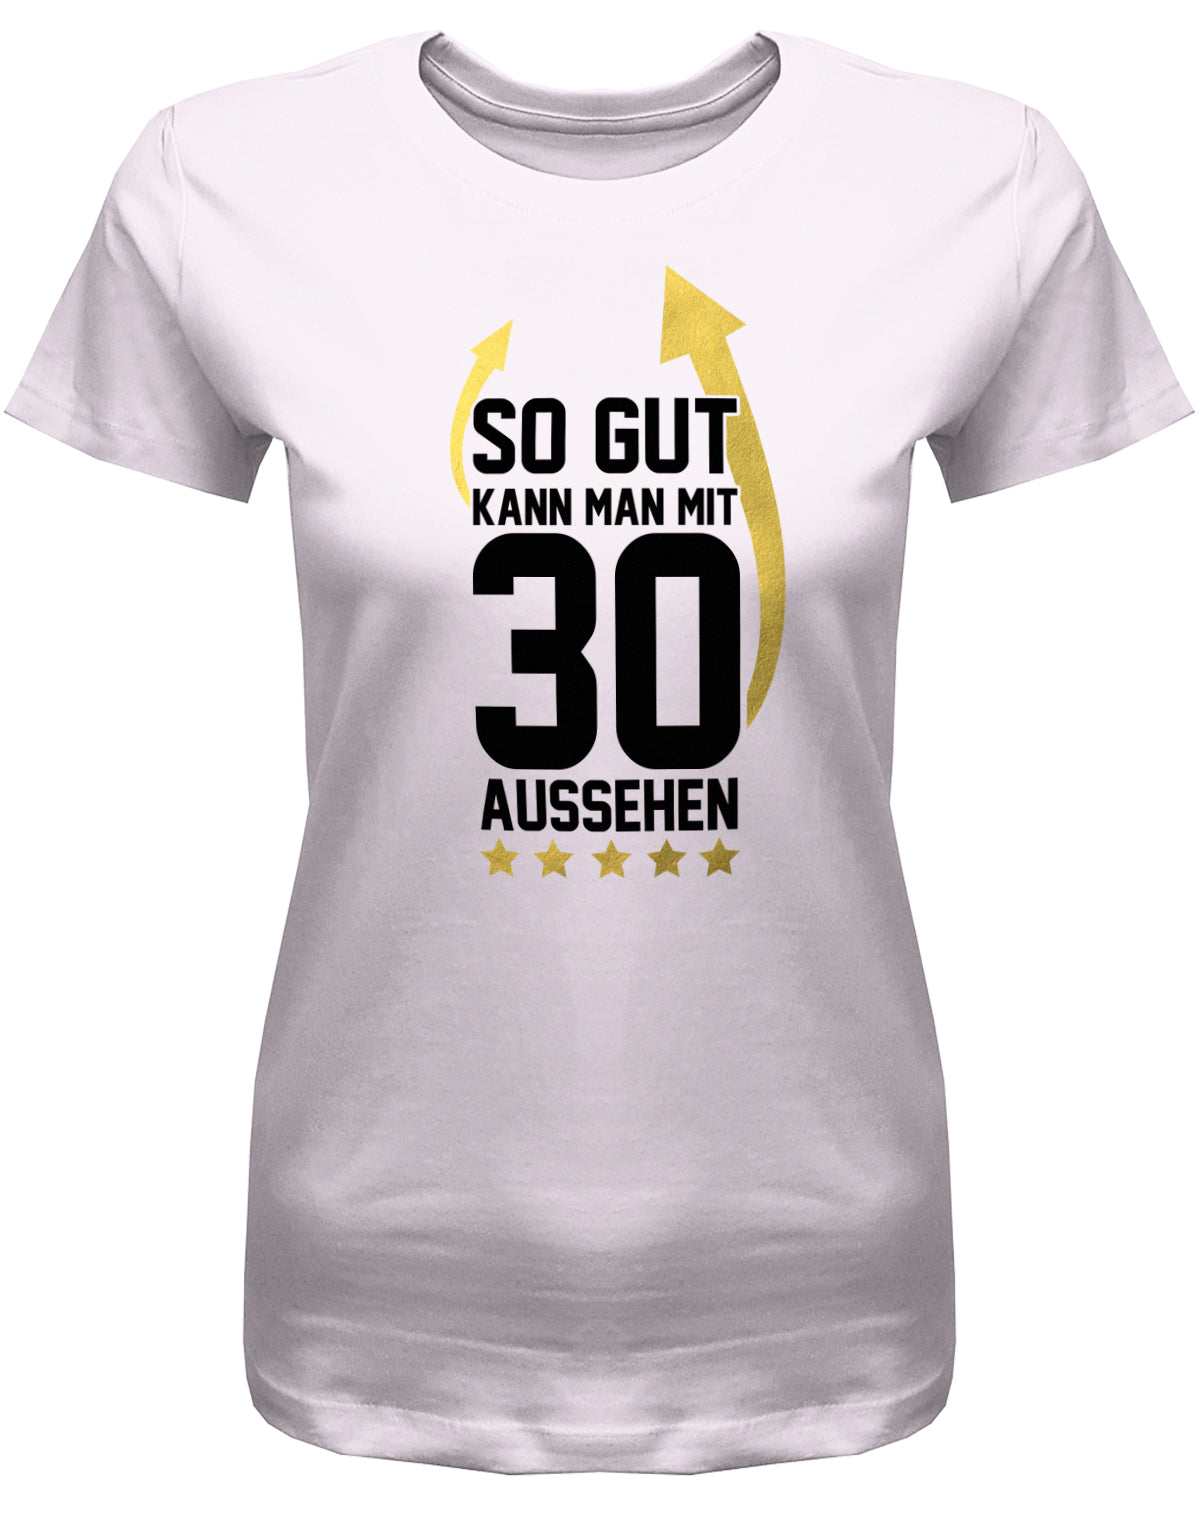 So gut kann man mit 30 aussehen - Pfeile - 30 Geburtstag Frauen Shirt